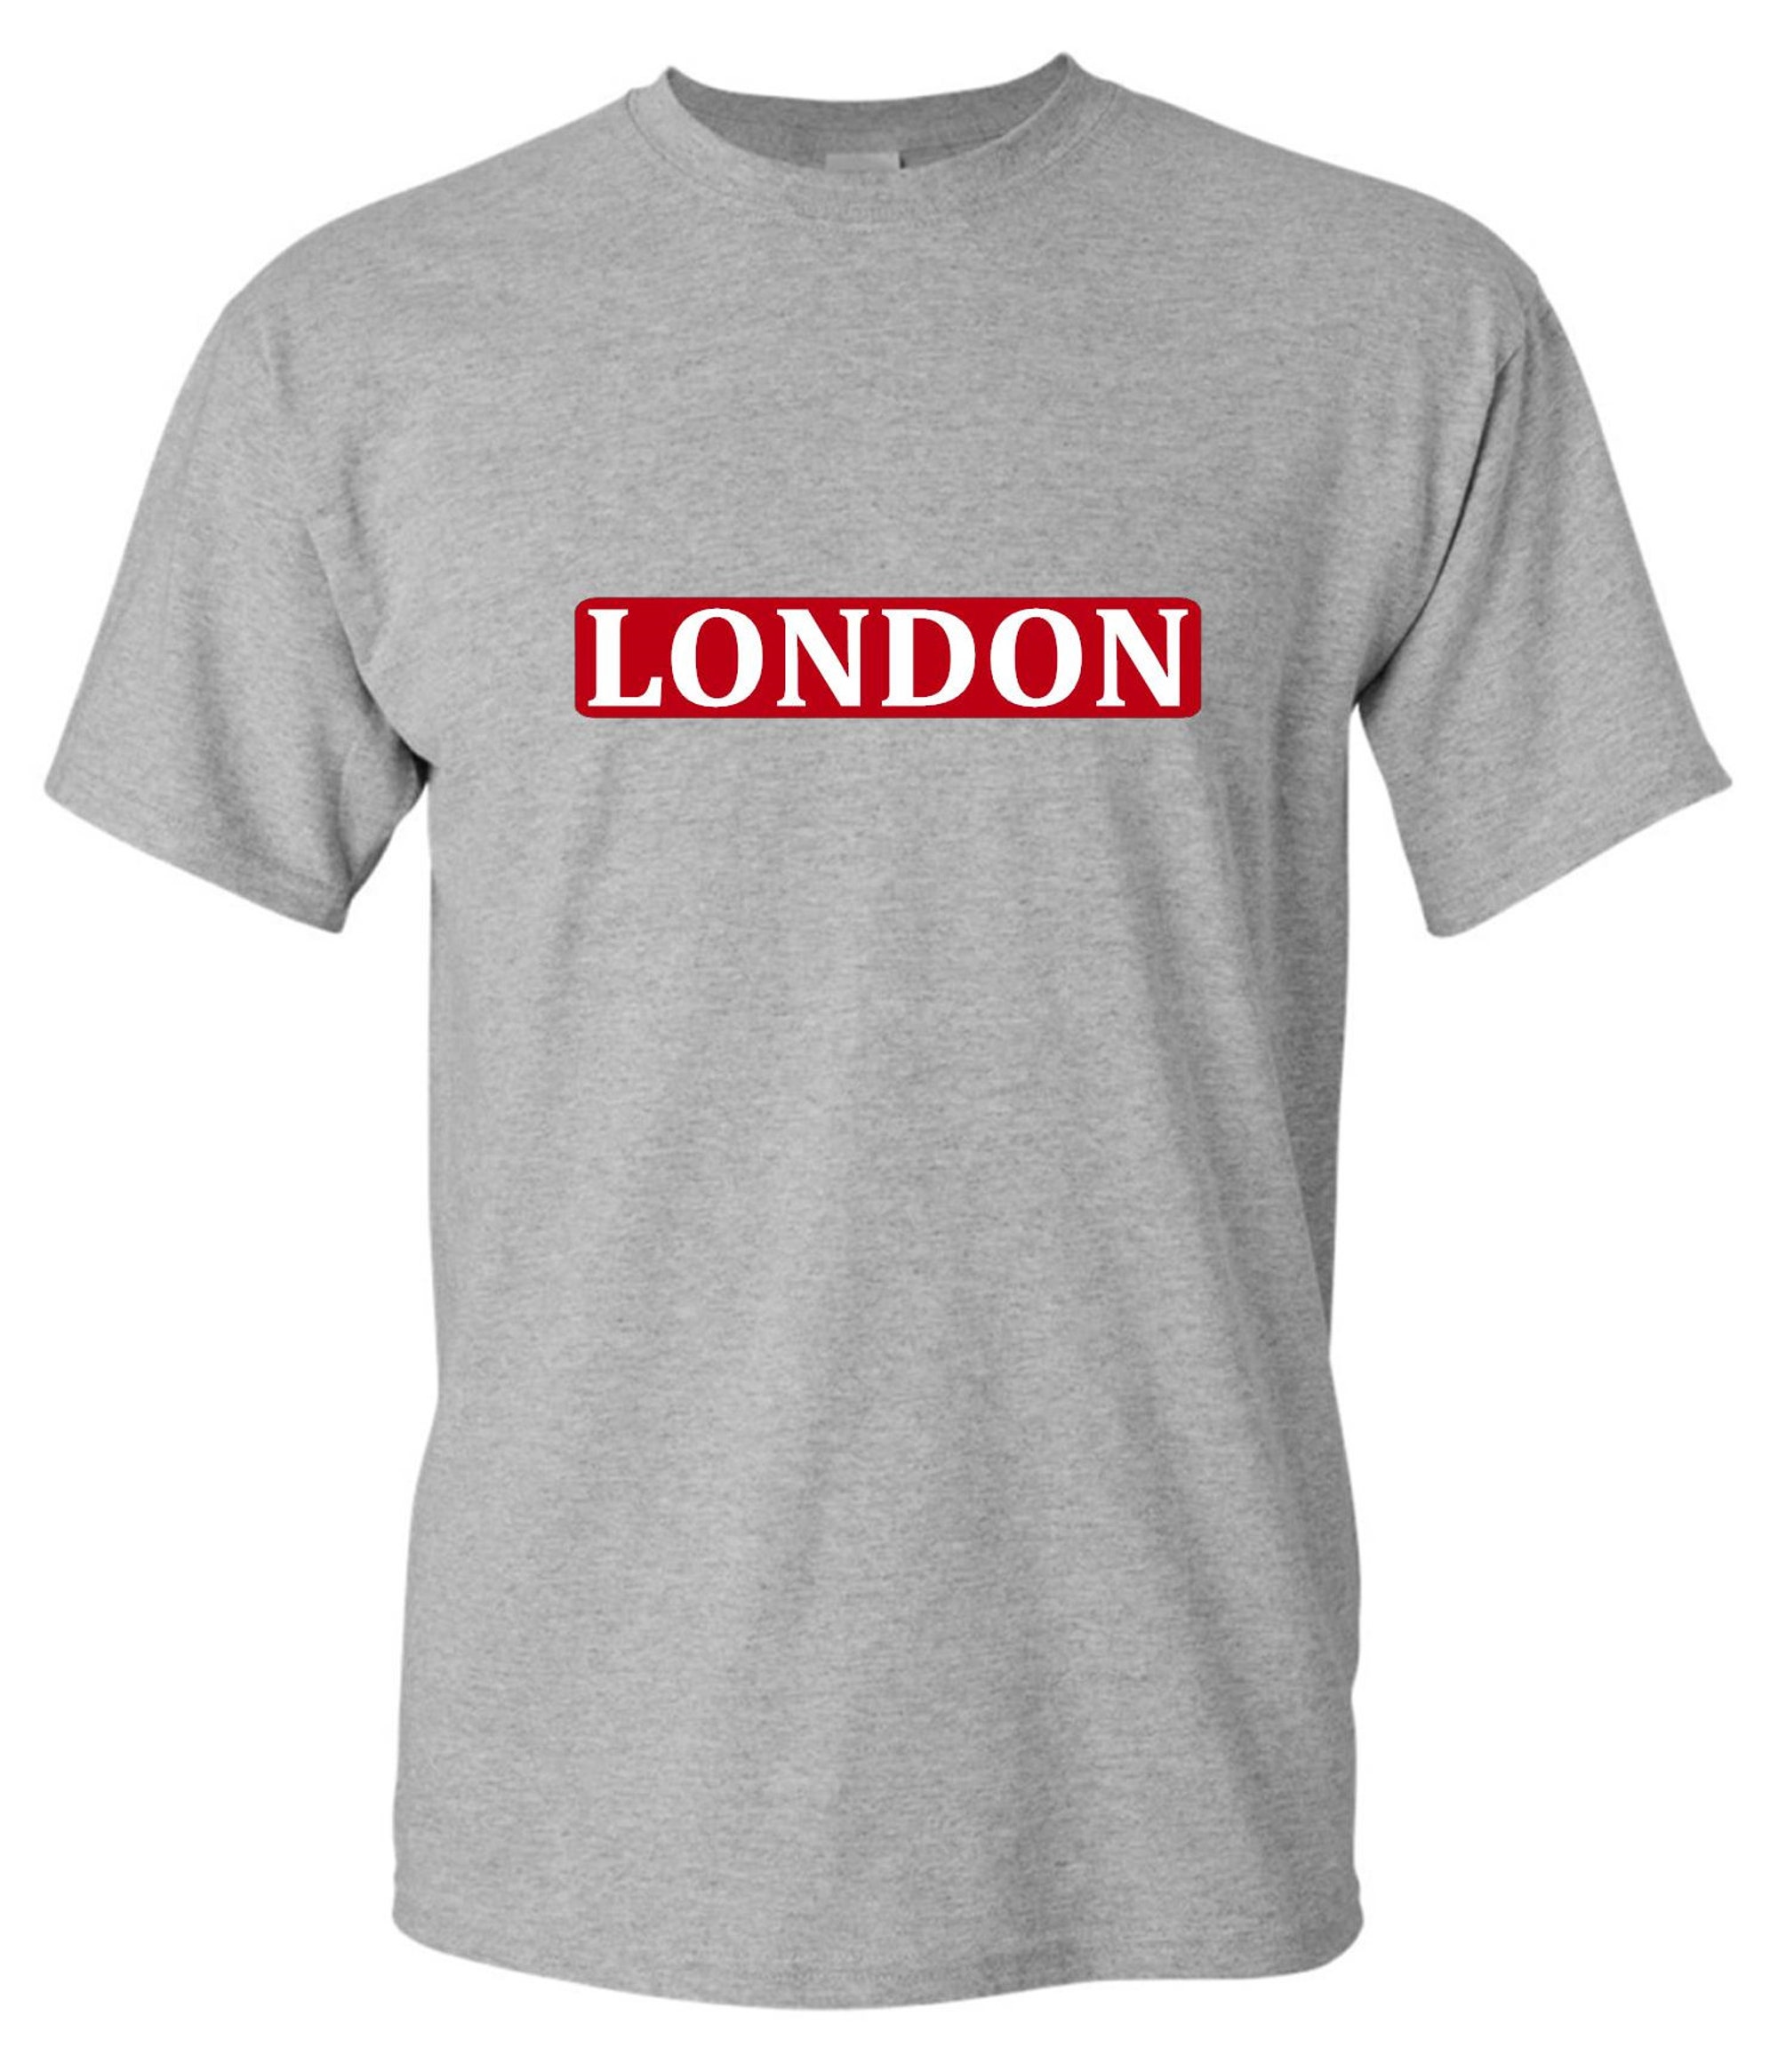 Discover London Tshirt, Unisex Shirts